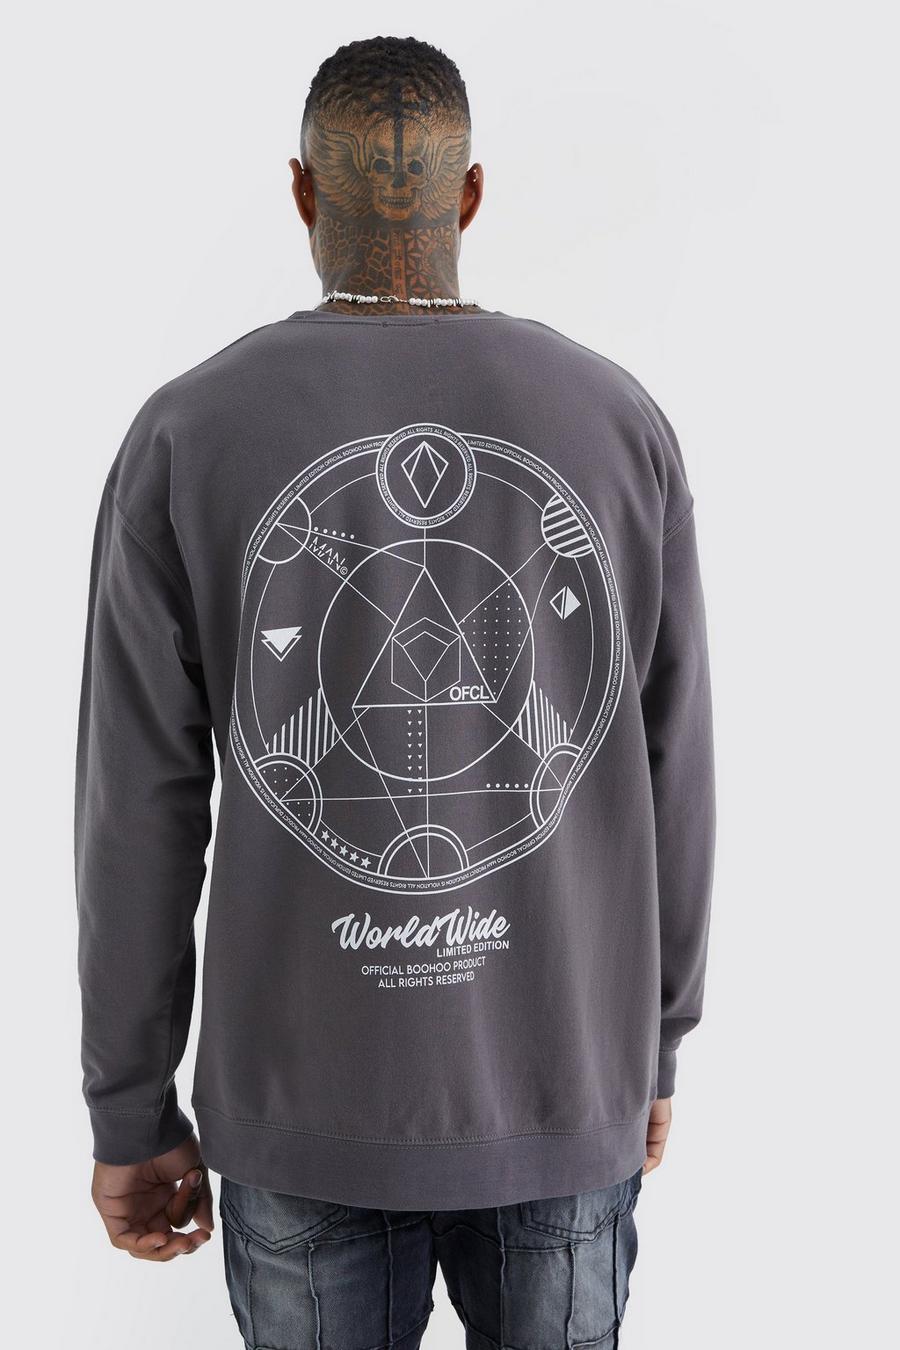 Charcoal grey Oversized Worldwide Back Graphic Sweatshirt